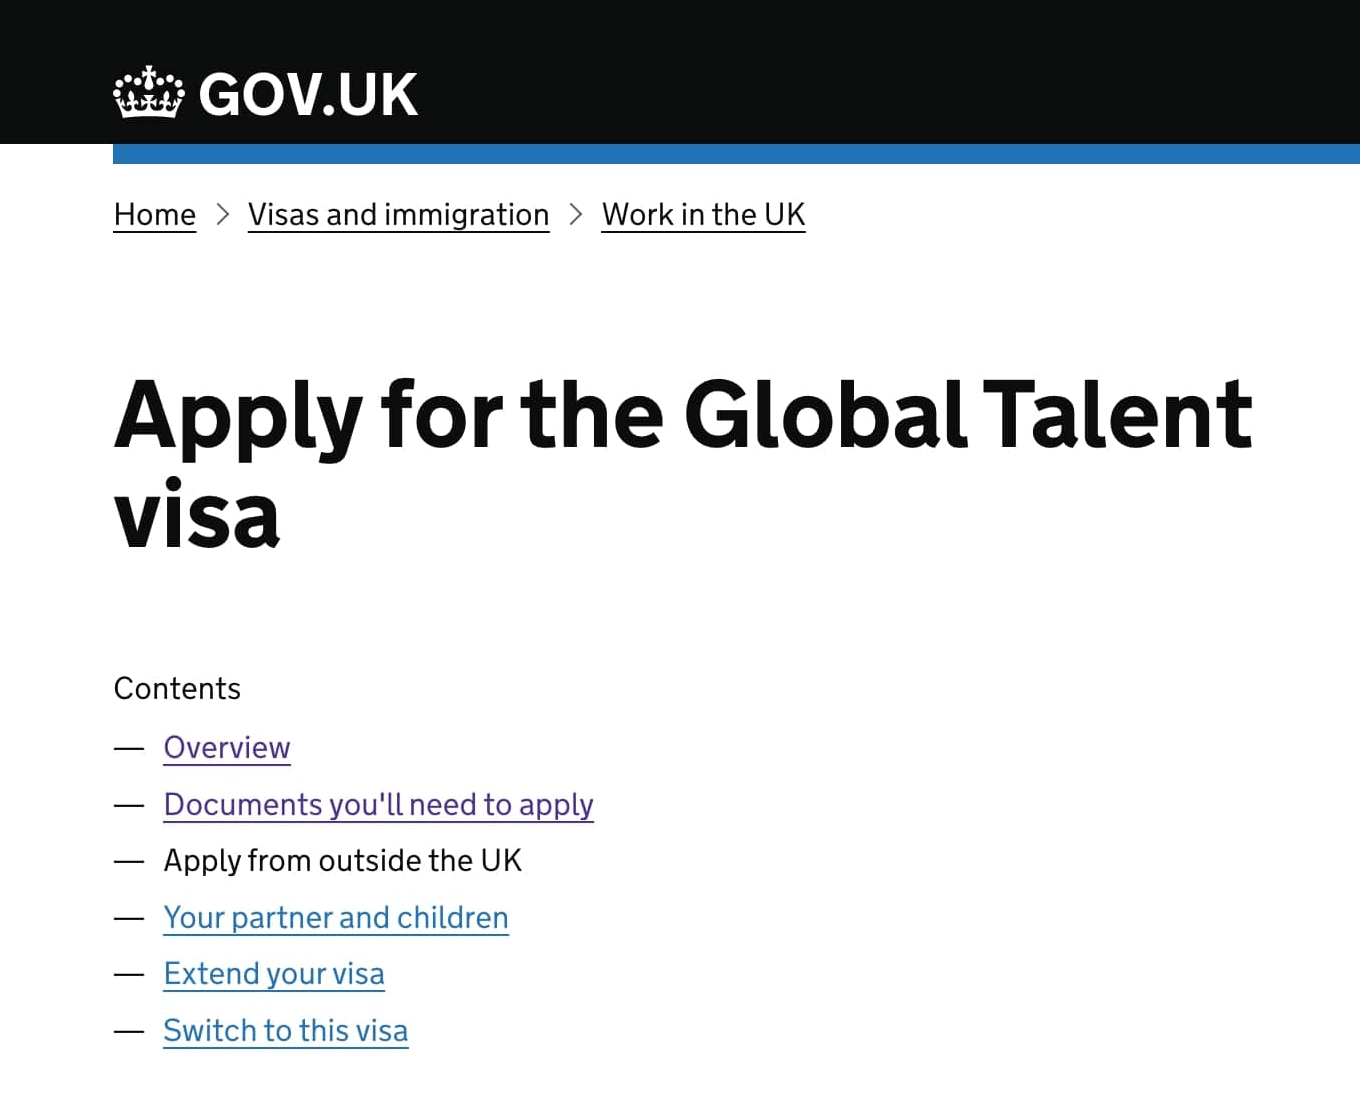 Список требований к Global Talent Visa